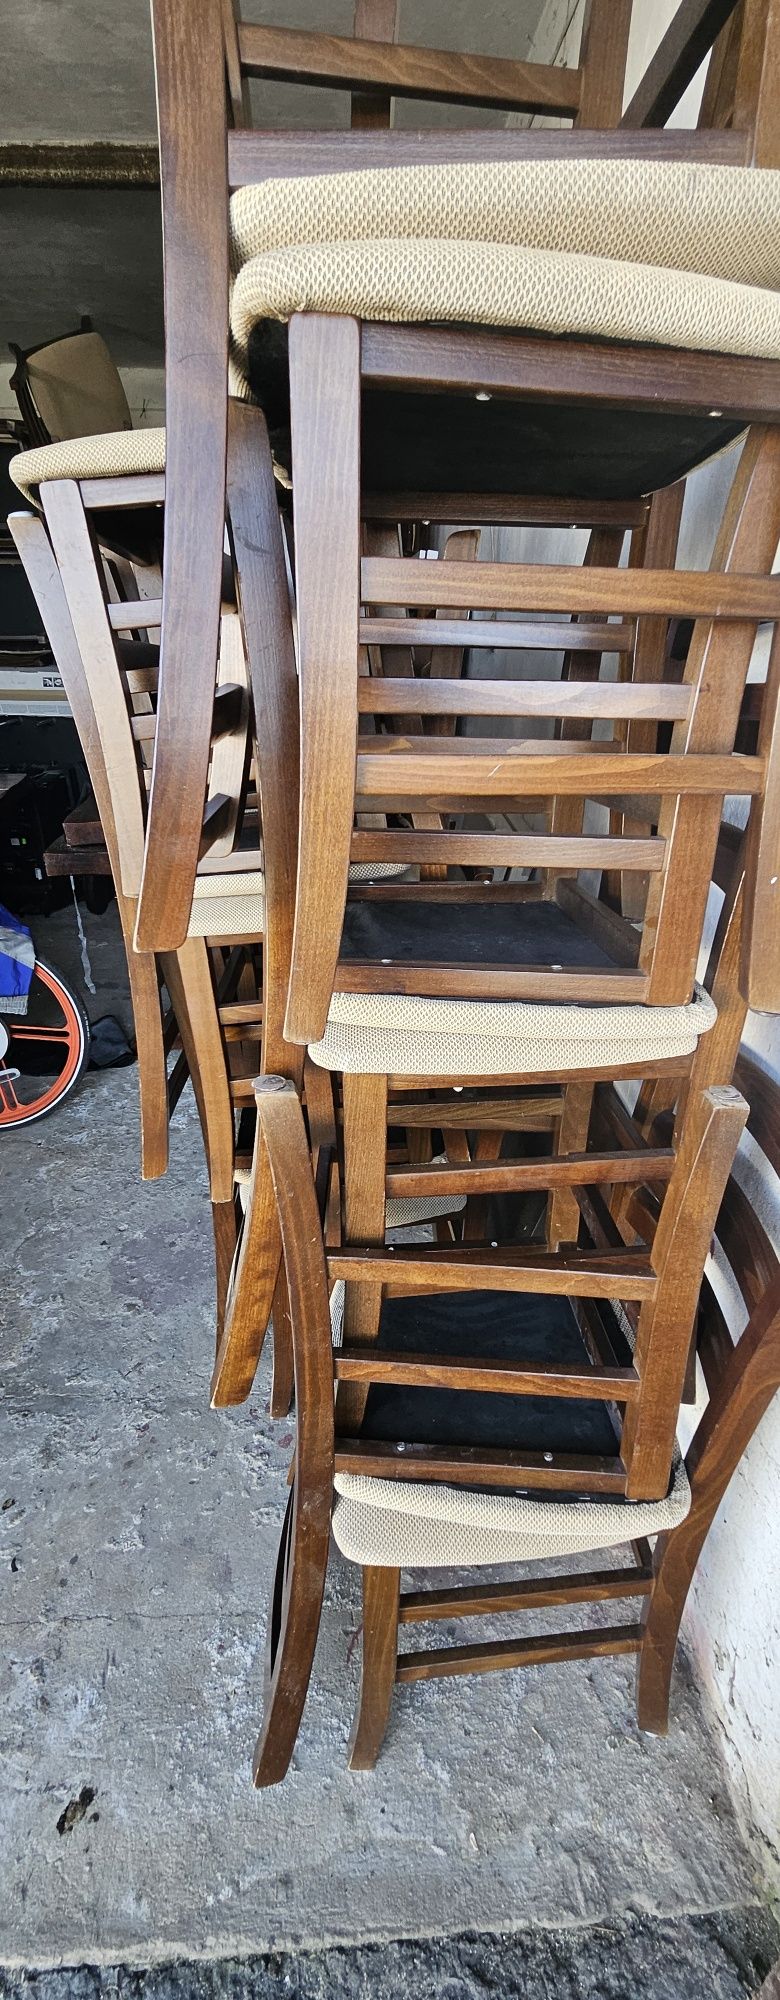 Krzesła  bukowe do restauracji i nie tylko większa ilość plus pokrowce